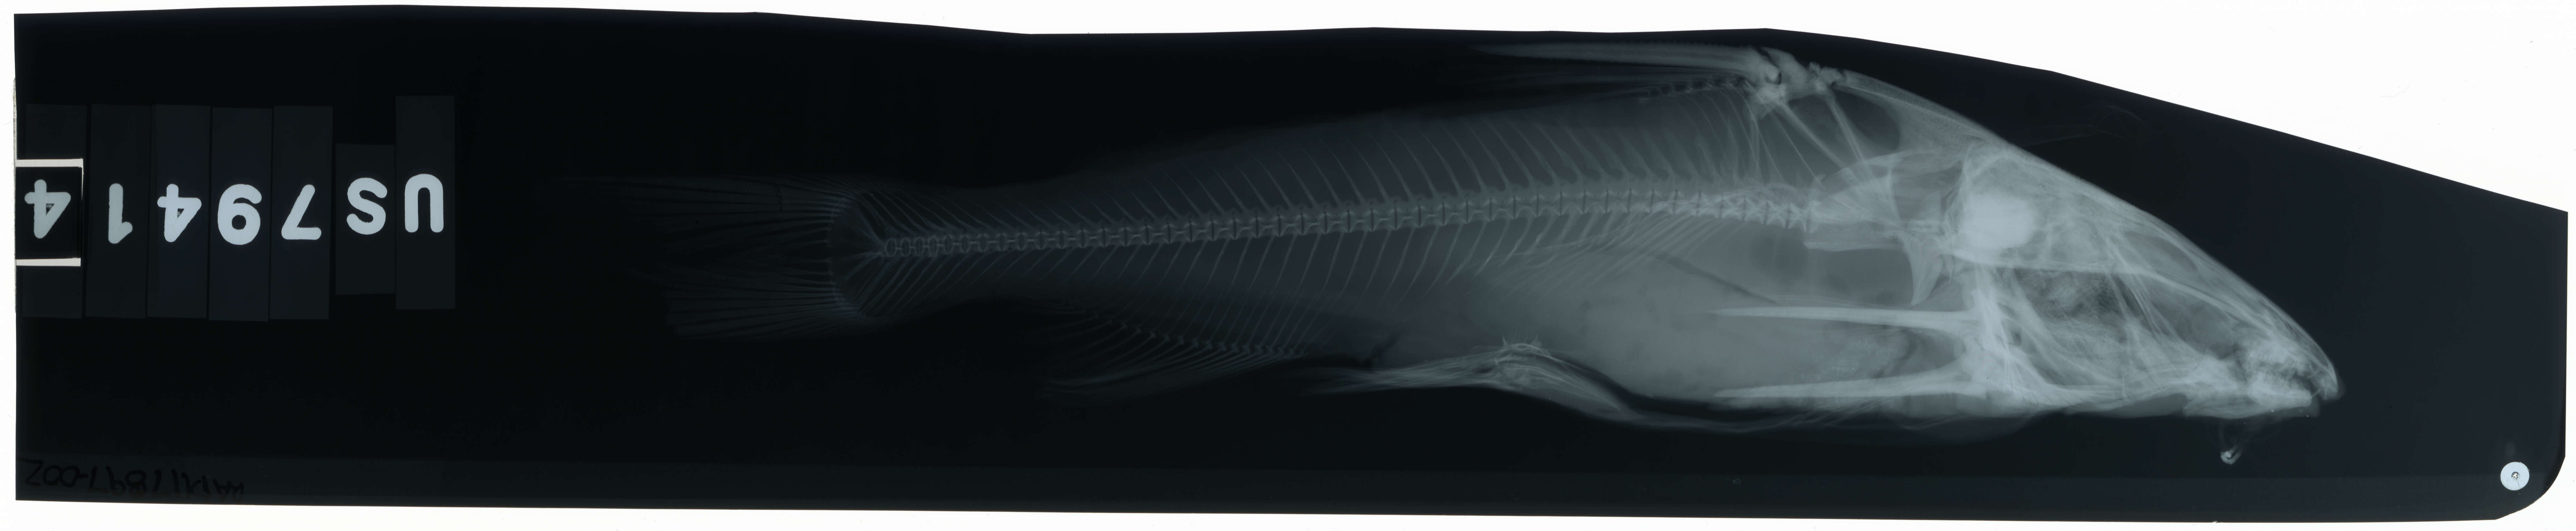 Image of Besudo sea catfish